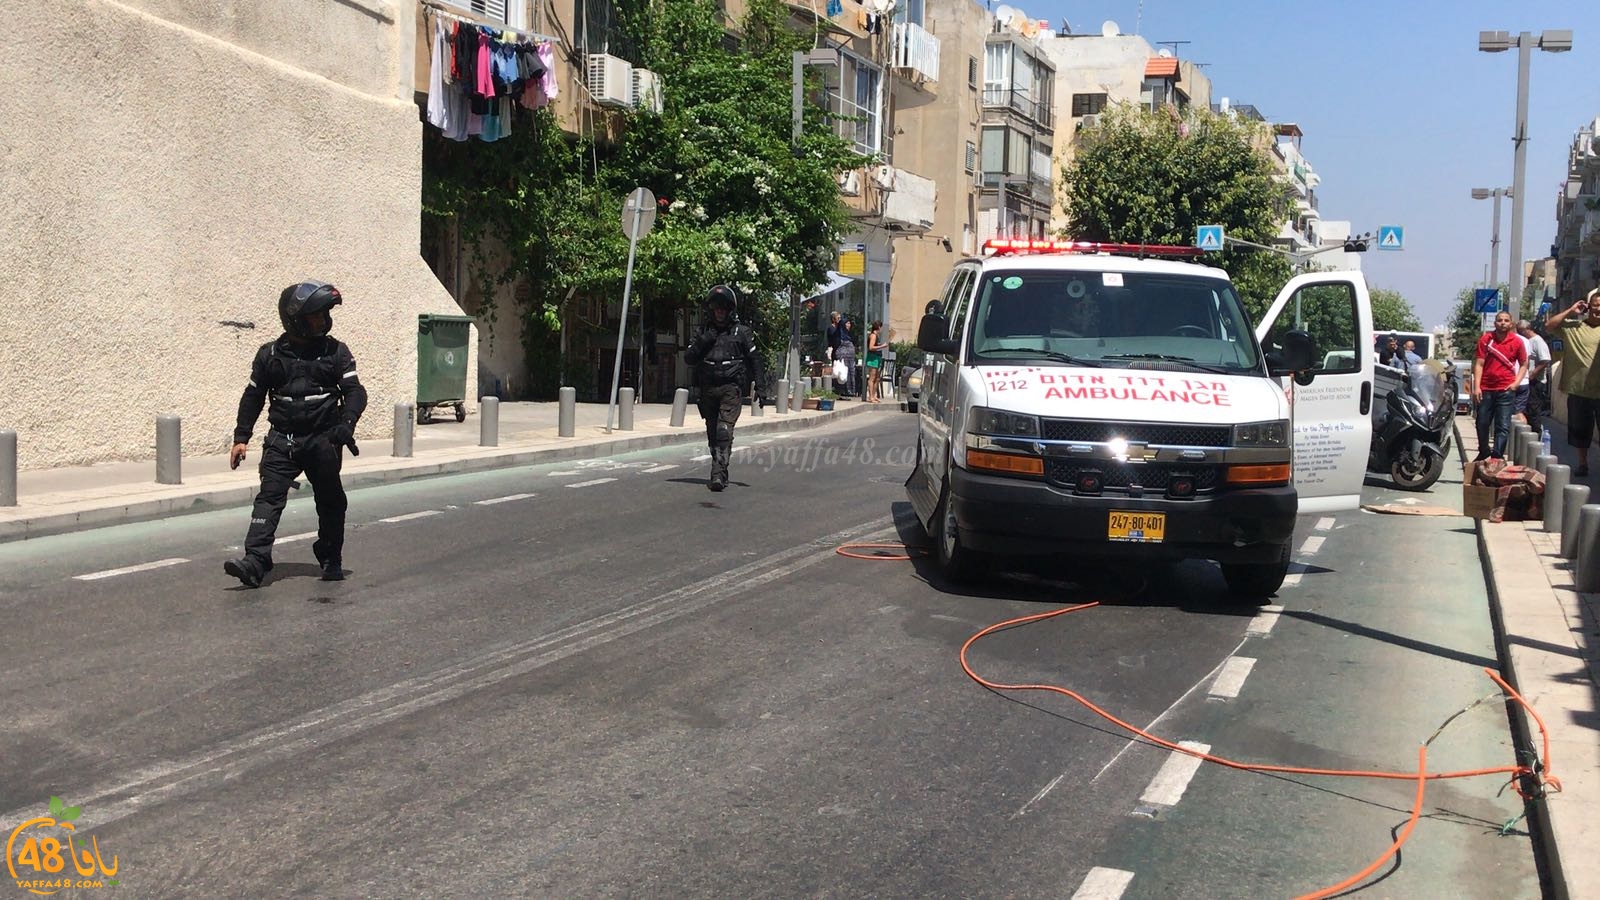   فيديو: بسبب كوابل كهربائية على الطريق - اصابة متوسطة لشاب من يافا بحادث طرق ذاتي 